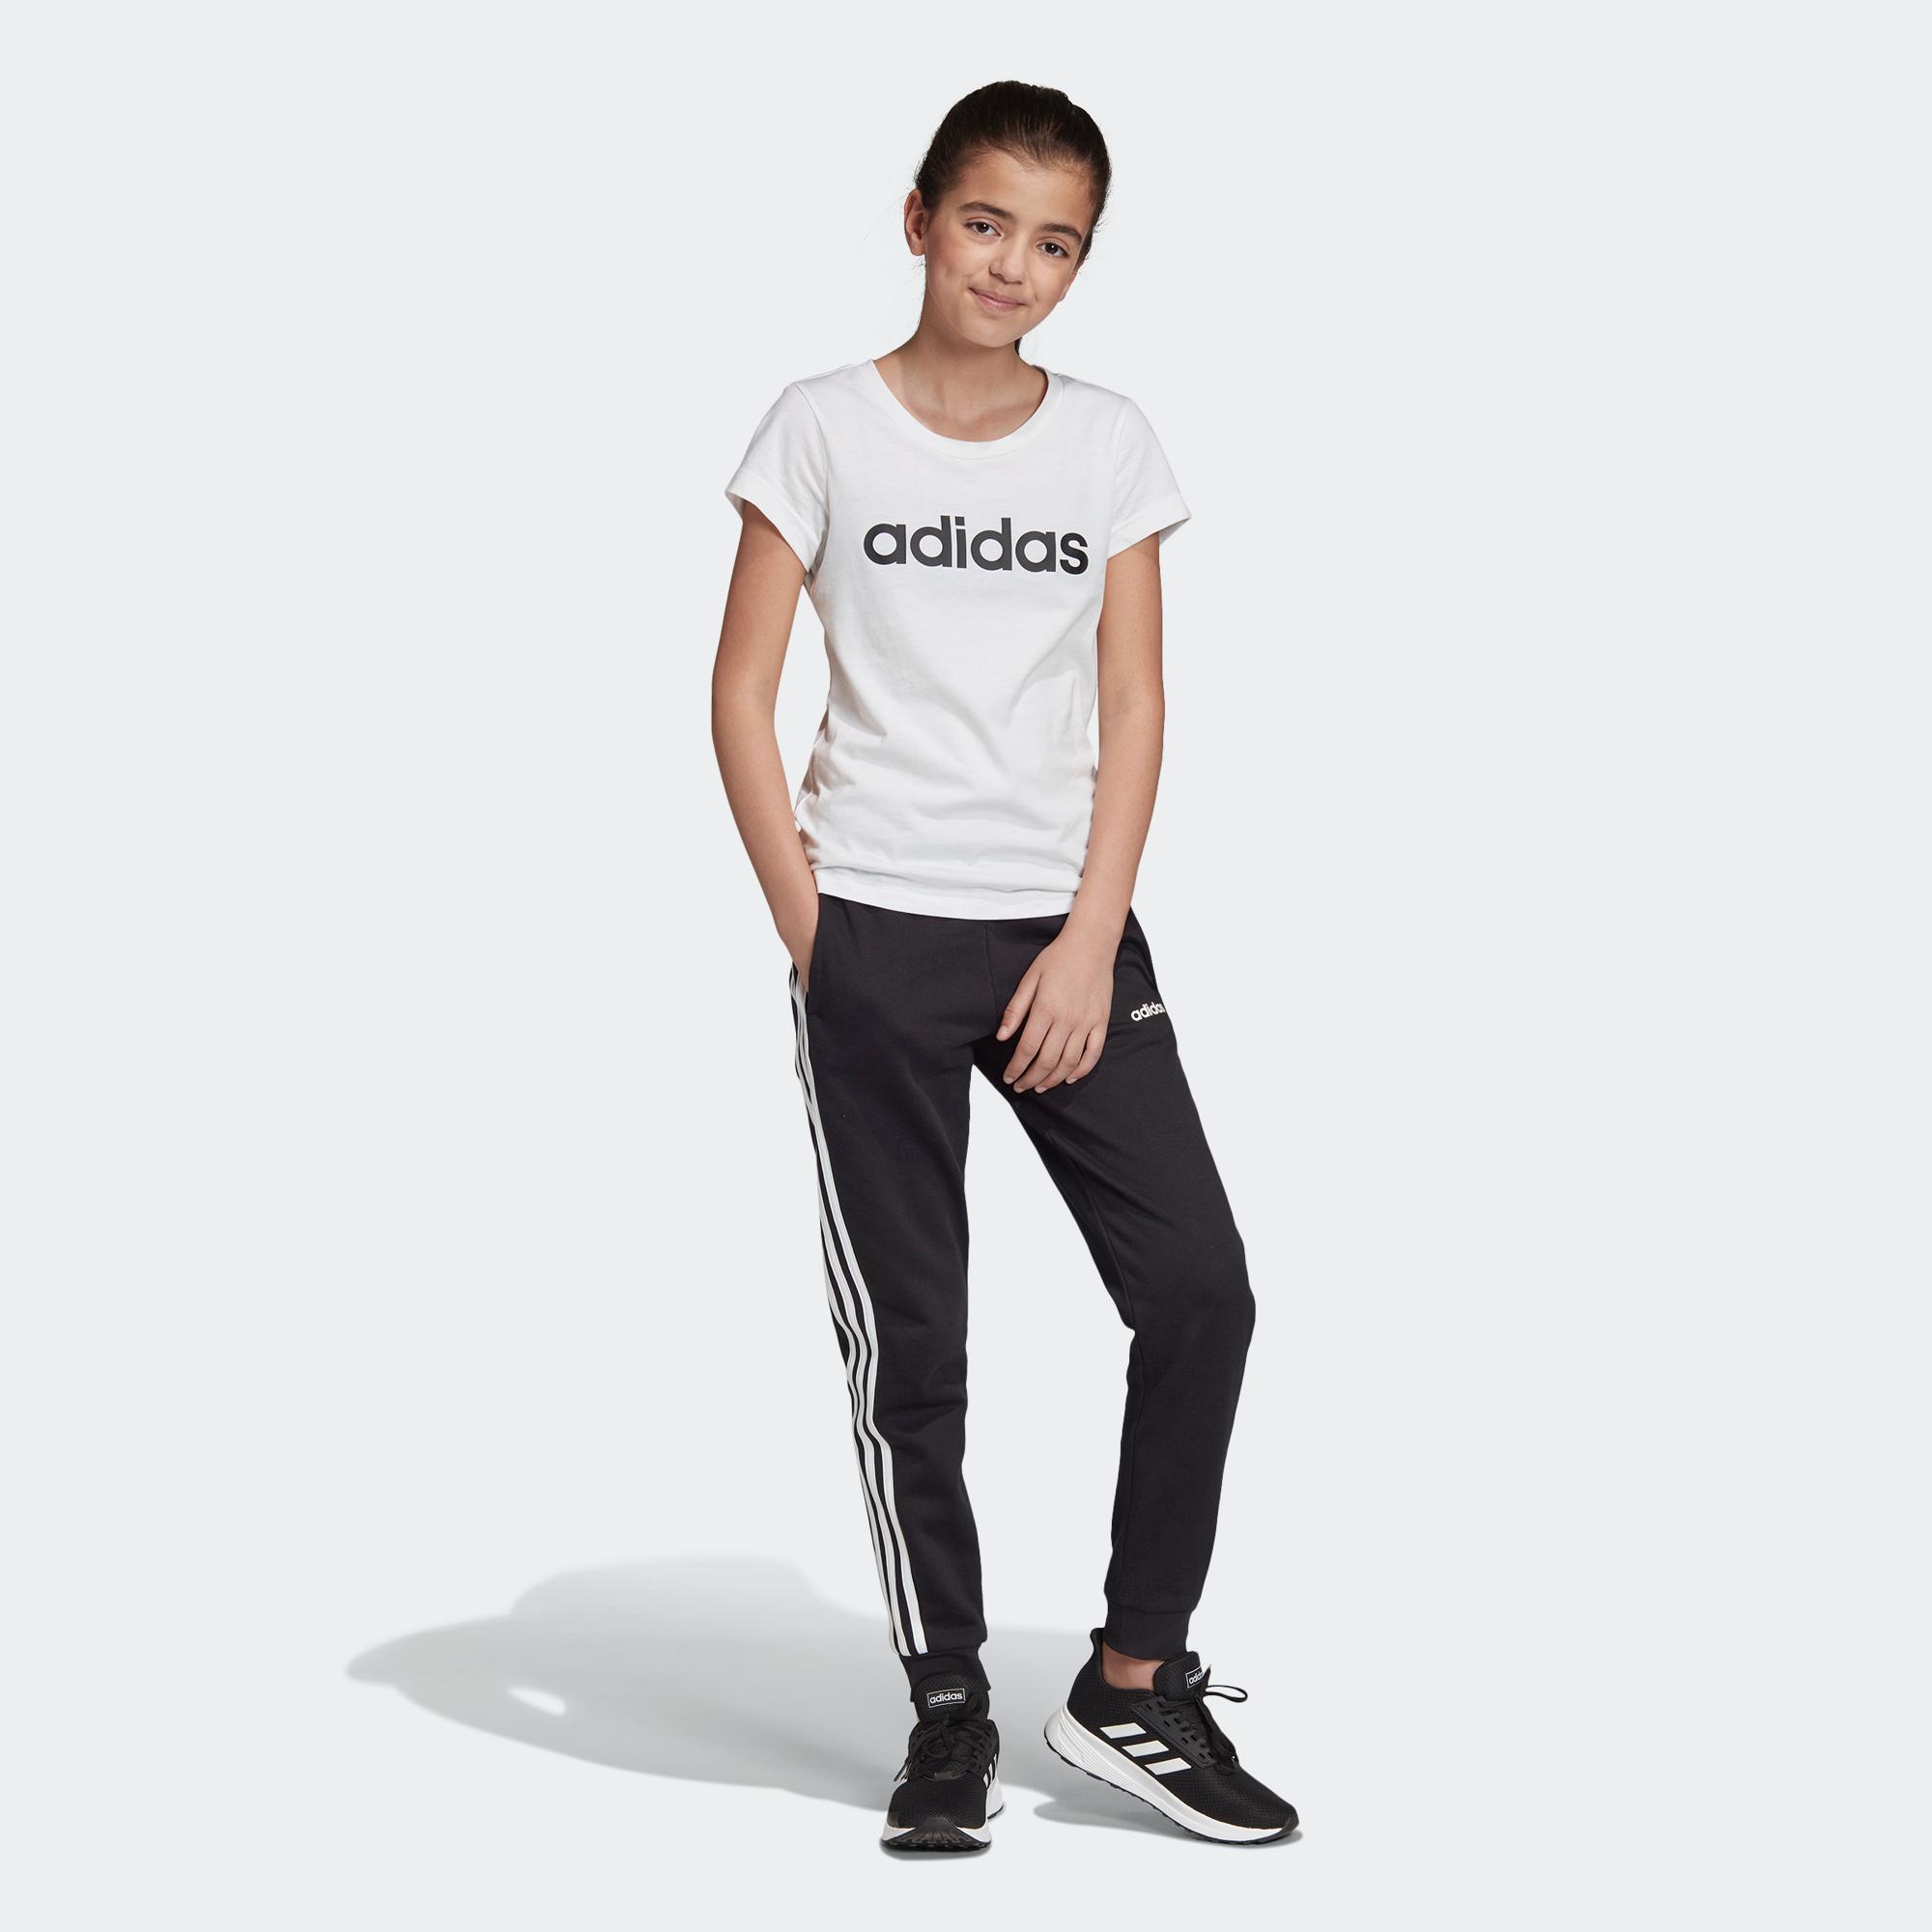 Onderzoek Vijf lavendel 3-STRIPES 運動褲- 黑色| 女童| adidas(愛迪達)香港官方網上商店